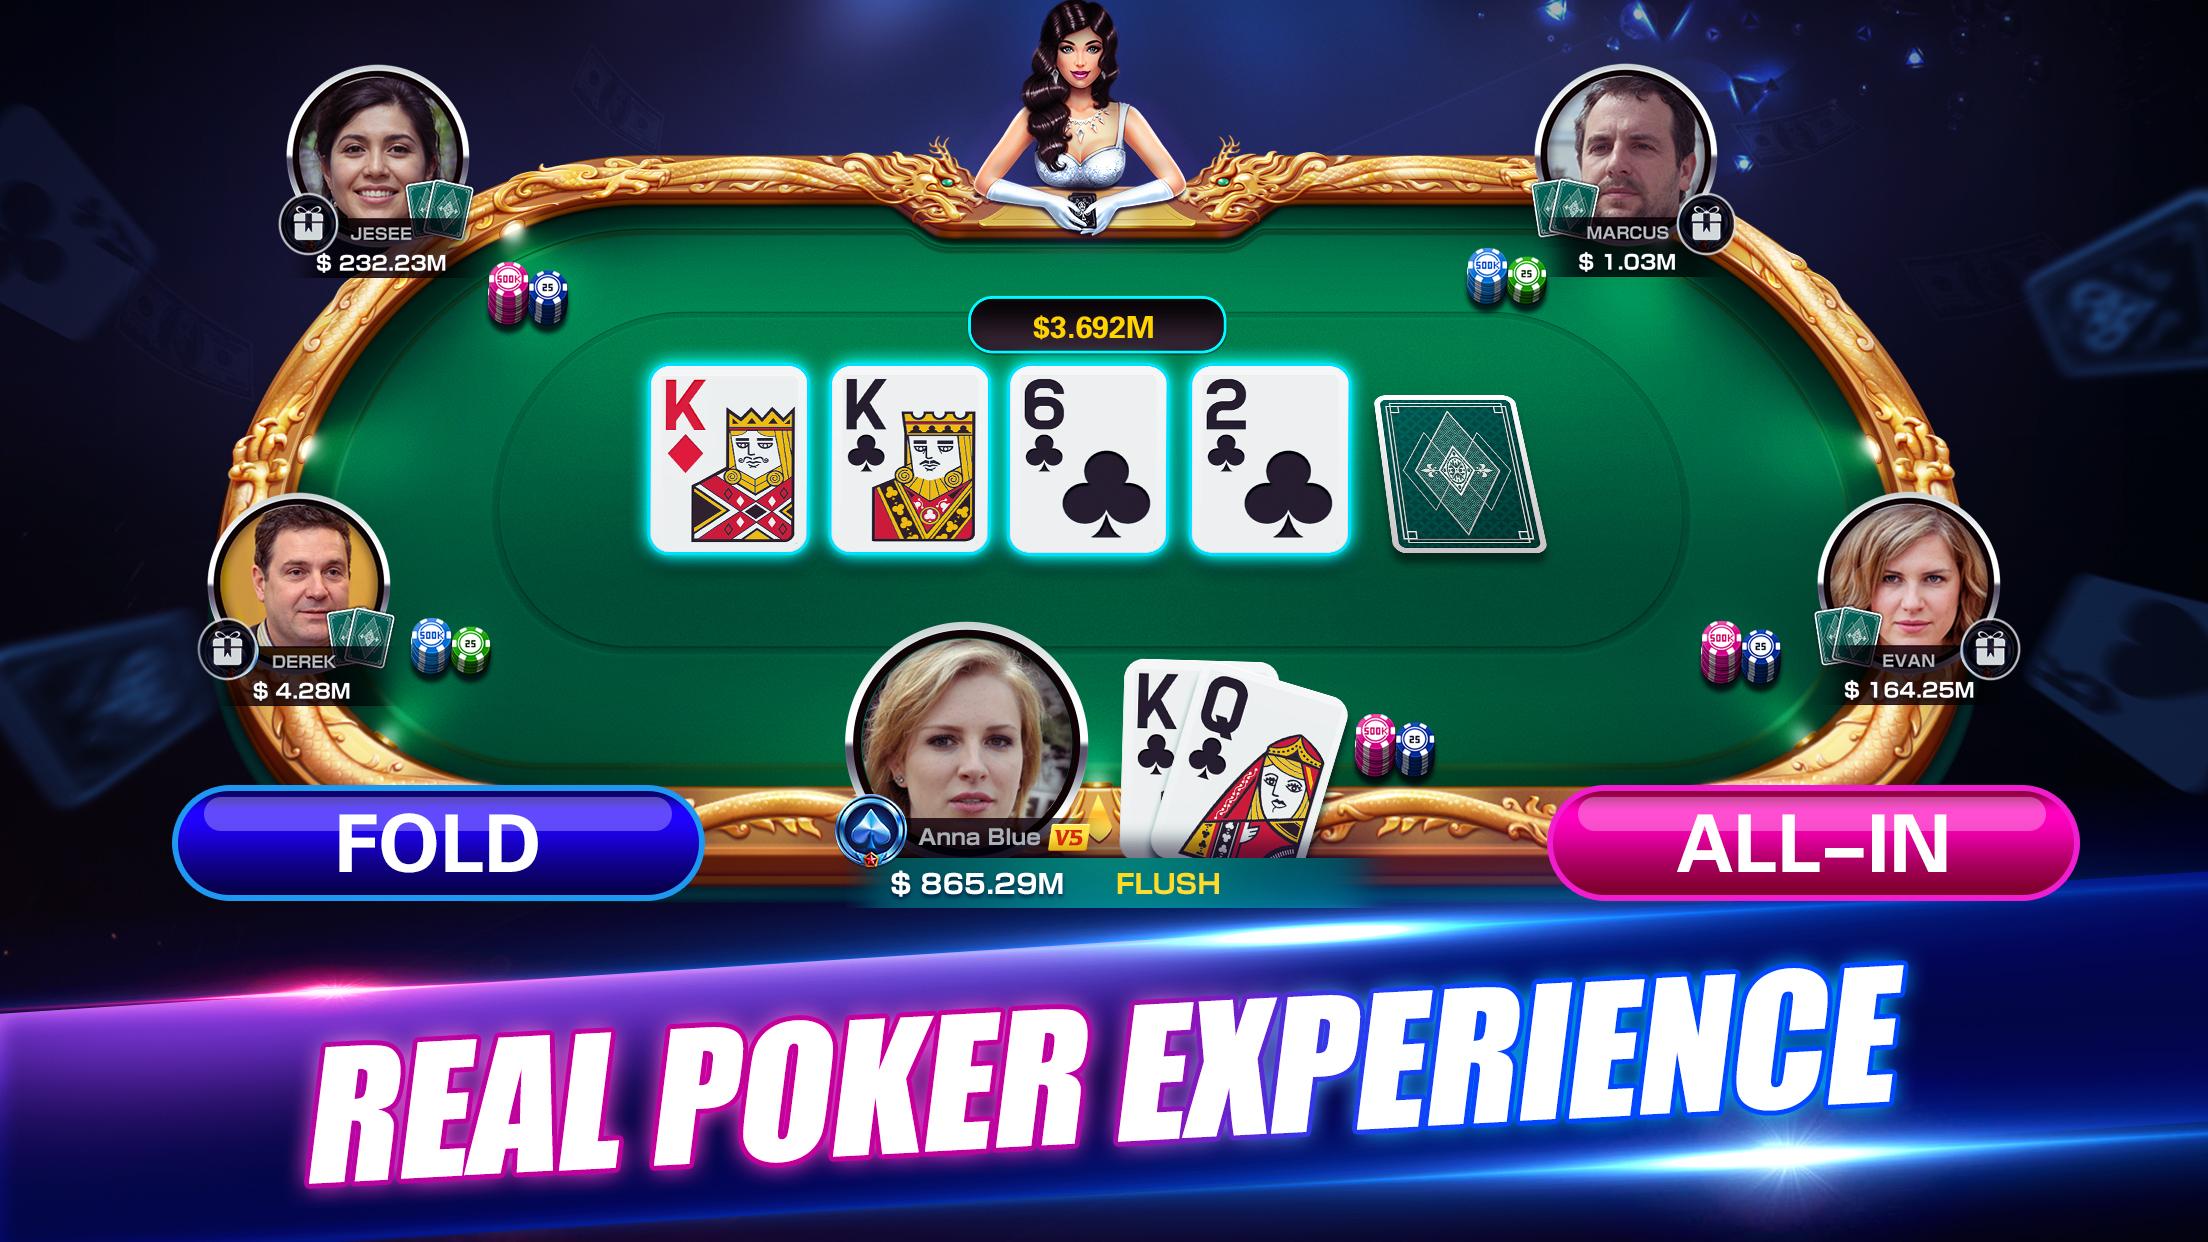 Texas покер онлайн бесплатно игровые автоматы относятся к азартным играм в оаэ